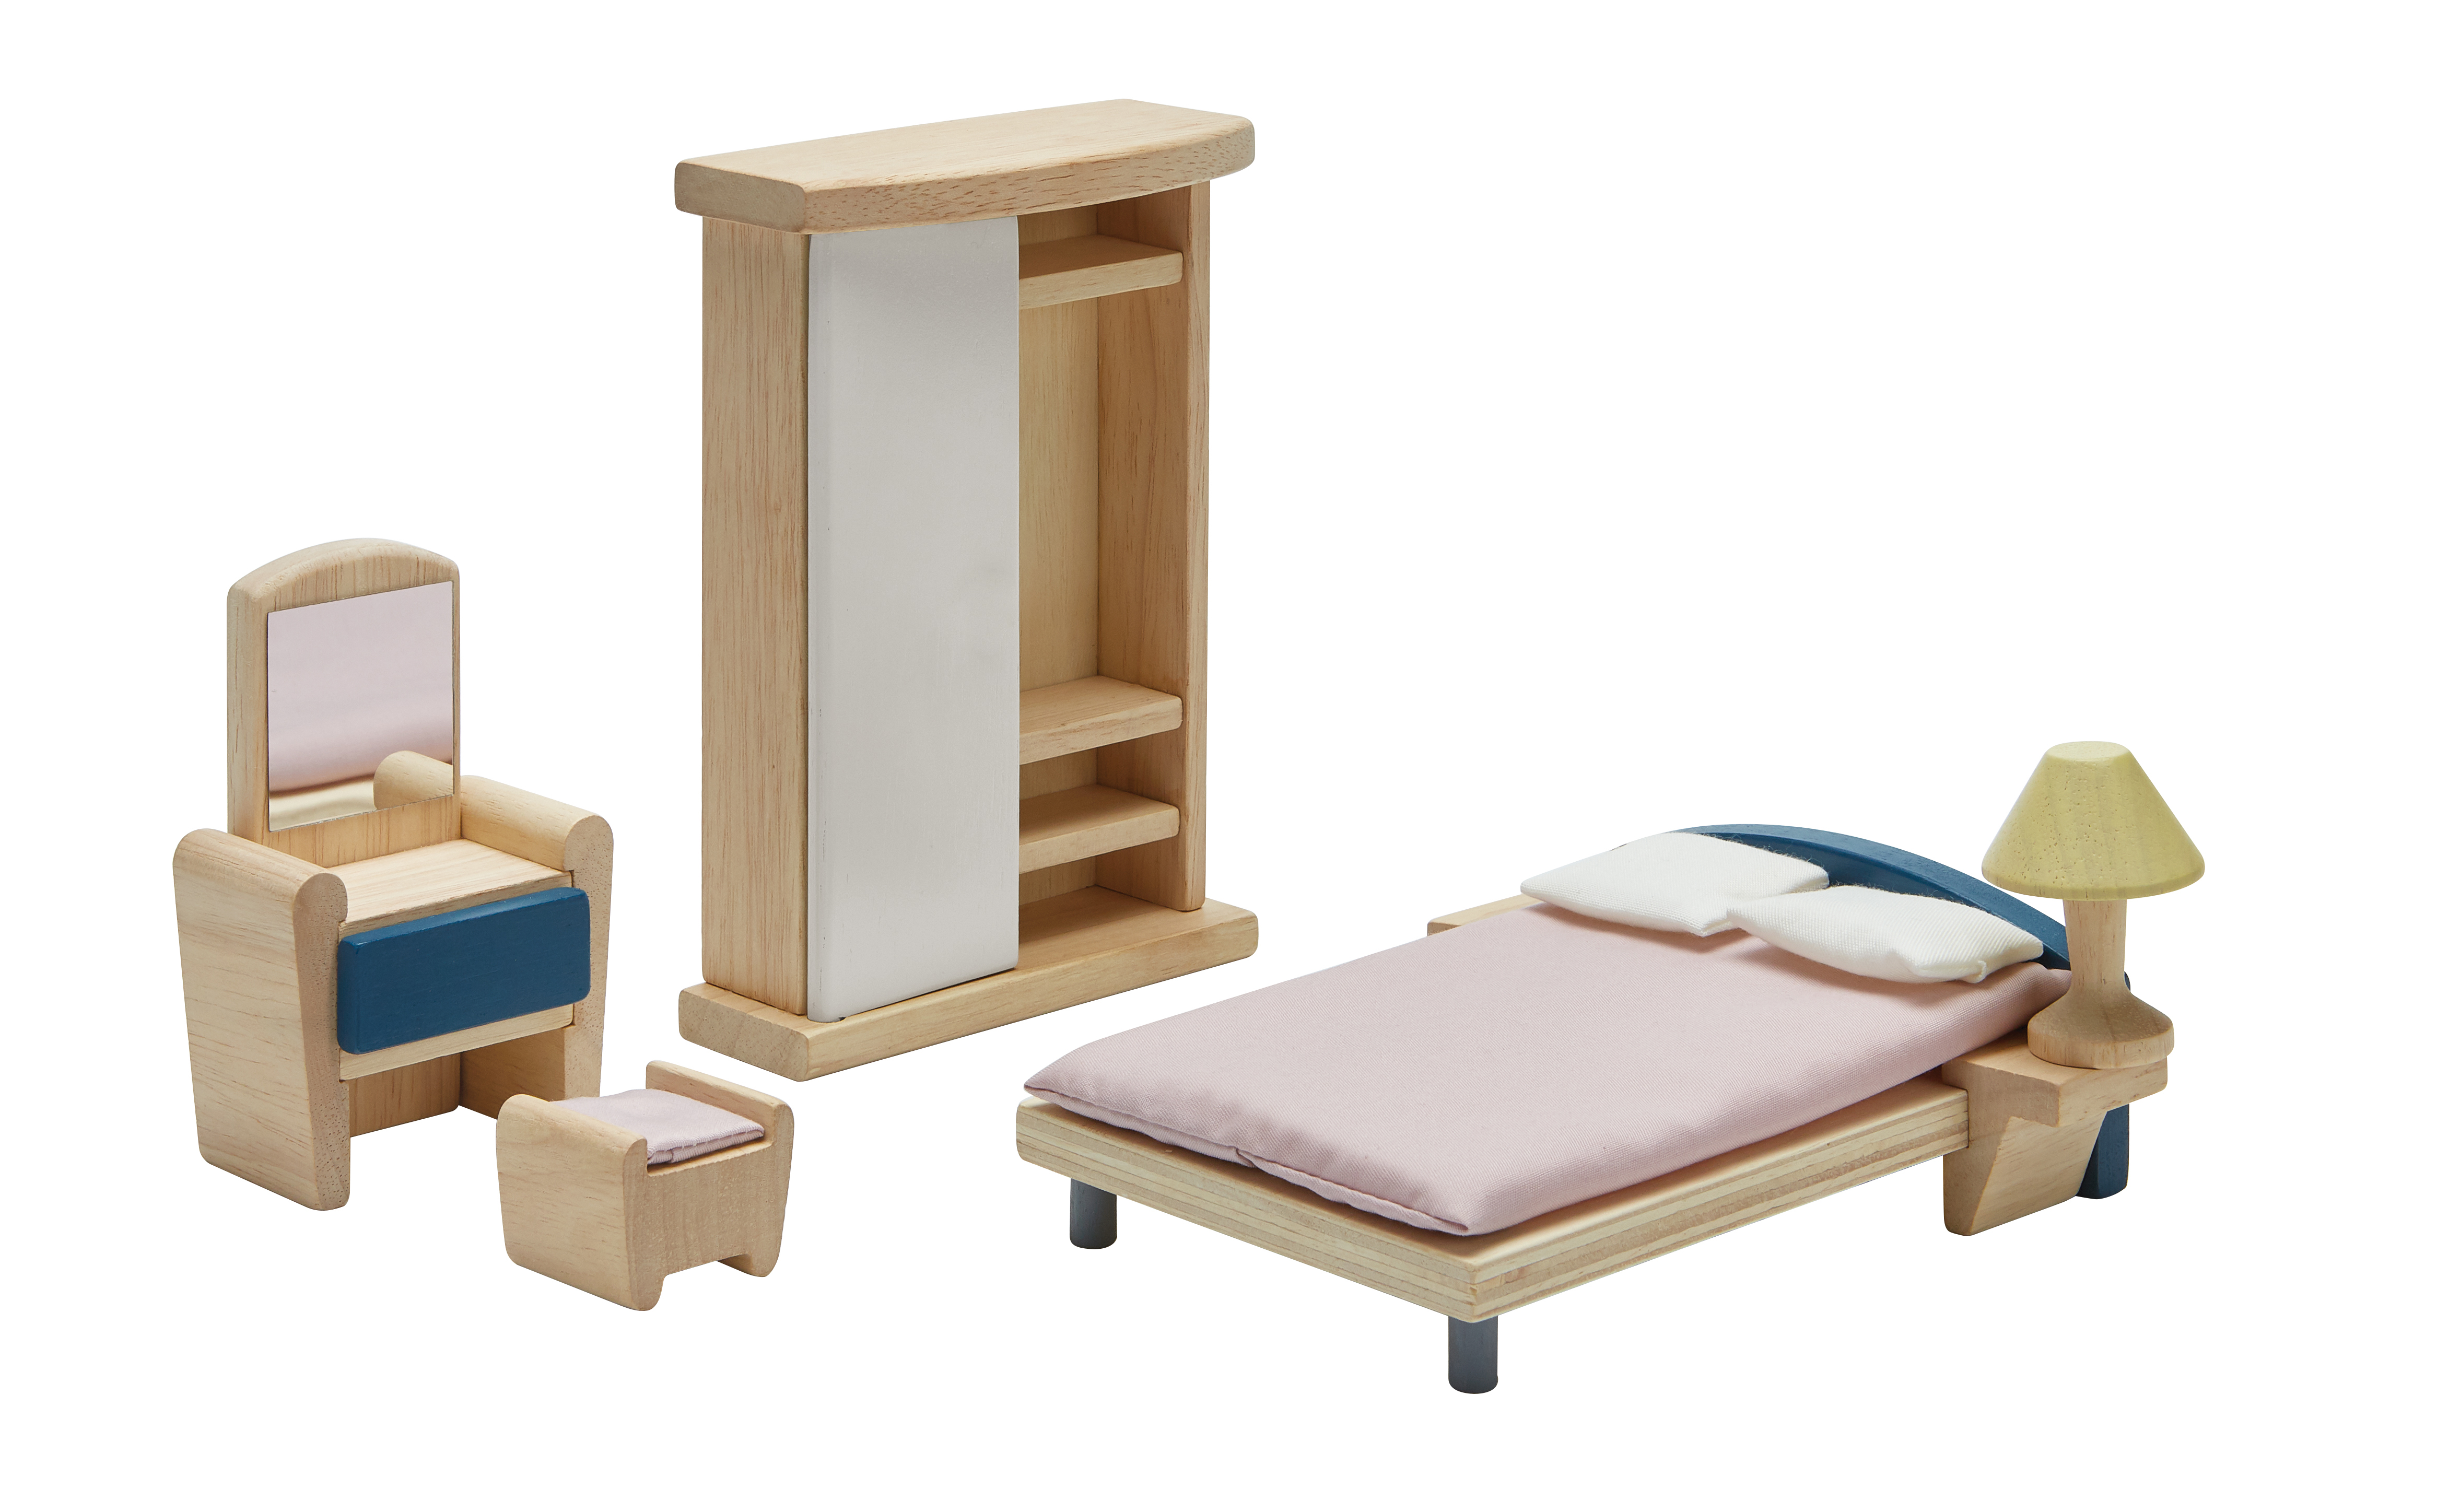 Игровой набор Plan Toys Набор мебели для спальни, серии DOLLHOUSE набор детской мебели sitstep туалетный столик и стул малиновый